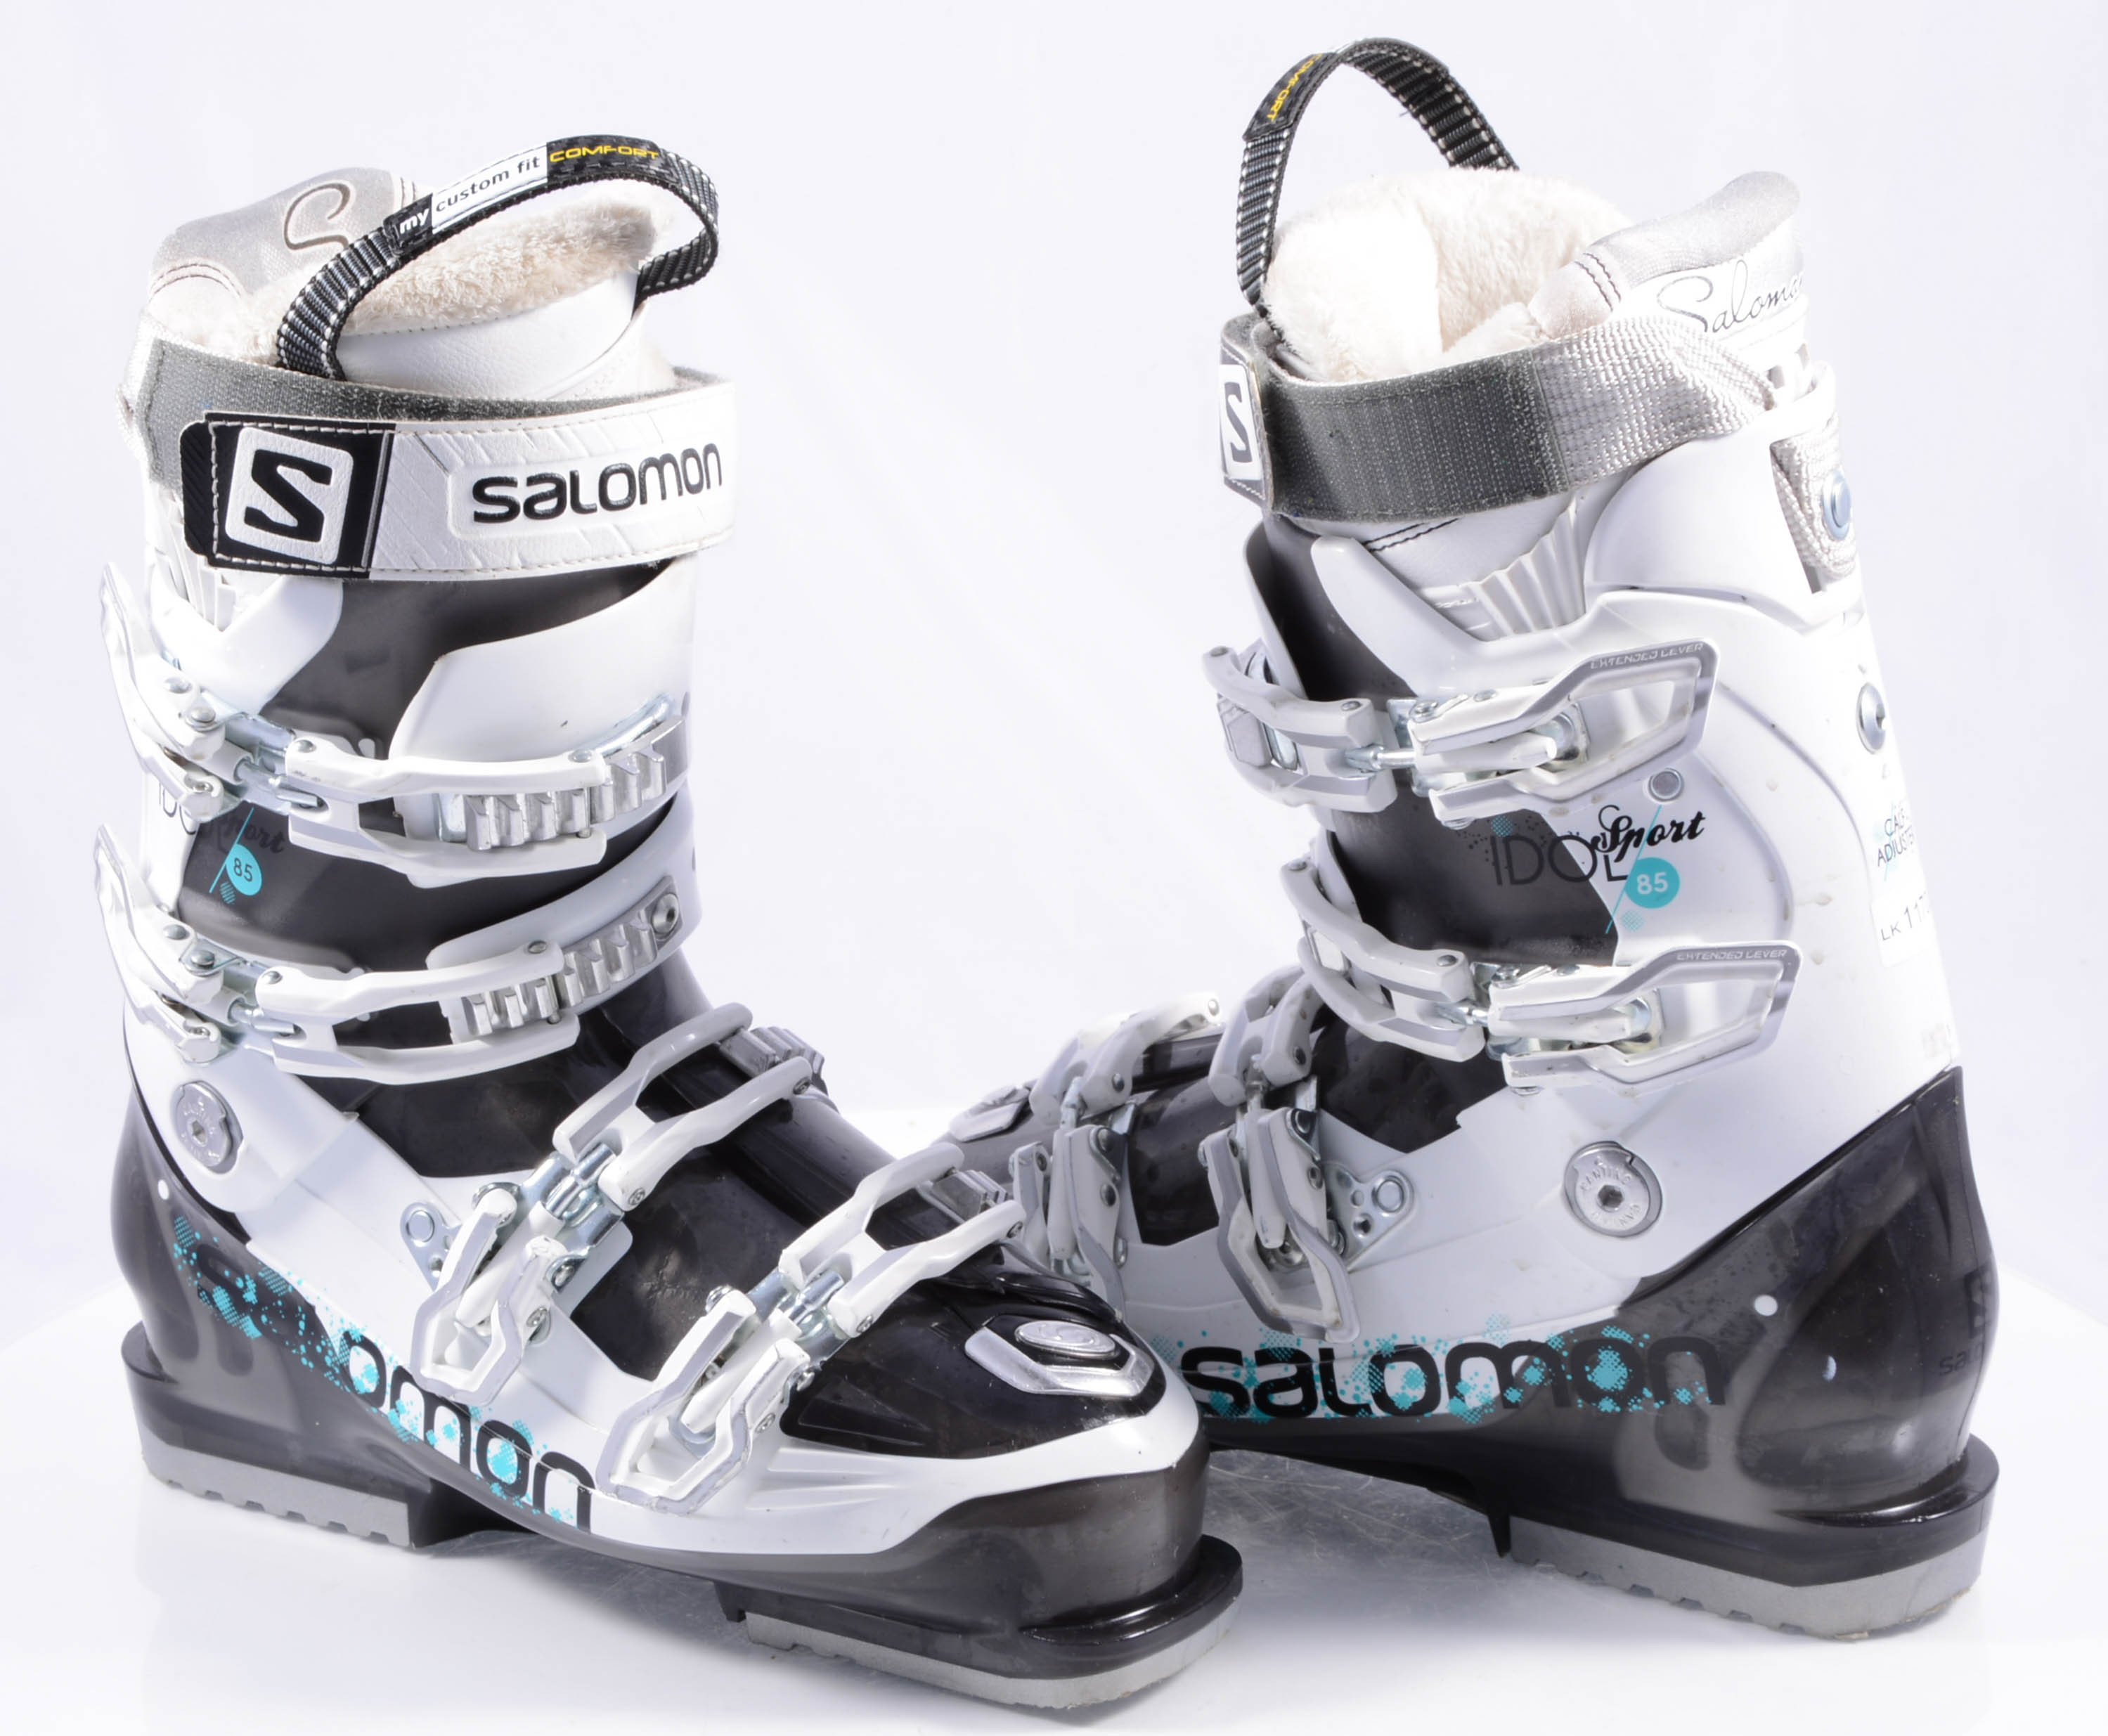 doe alstublieft niet verlegen helemaal dames skischoenen SALOMON IDOL SPORT 85, calf adjuster, my custom fit,  canting, white/black/turquoise - Mardosport.nl